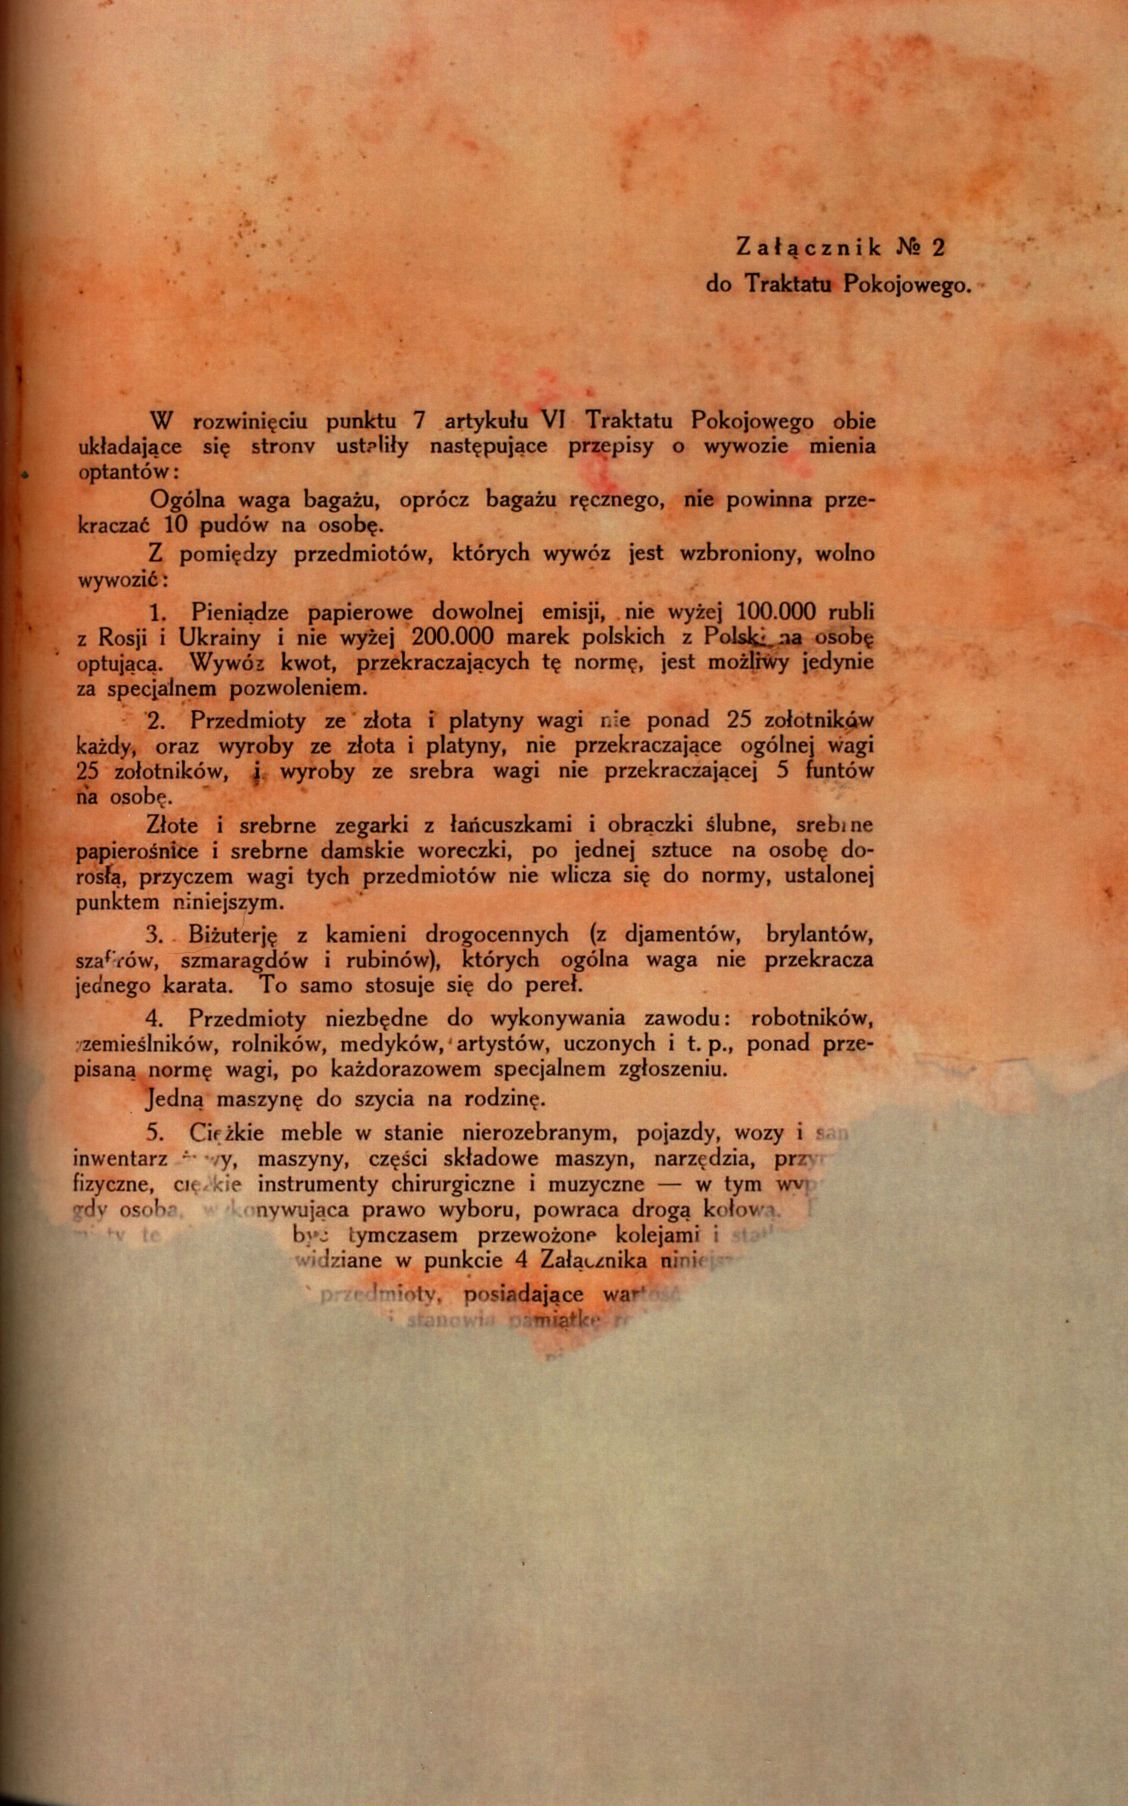 Traktat Pokoju między Polską a Rosją i Ukrainą podpisany w Rydze dnia 18 marca 1921 roku, s. 24, MSZ, sygn. 6739.